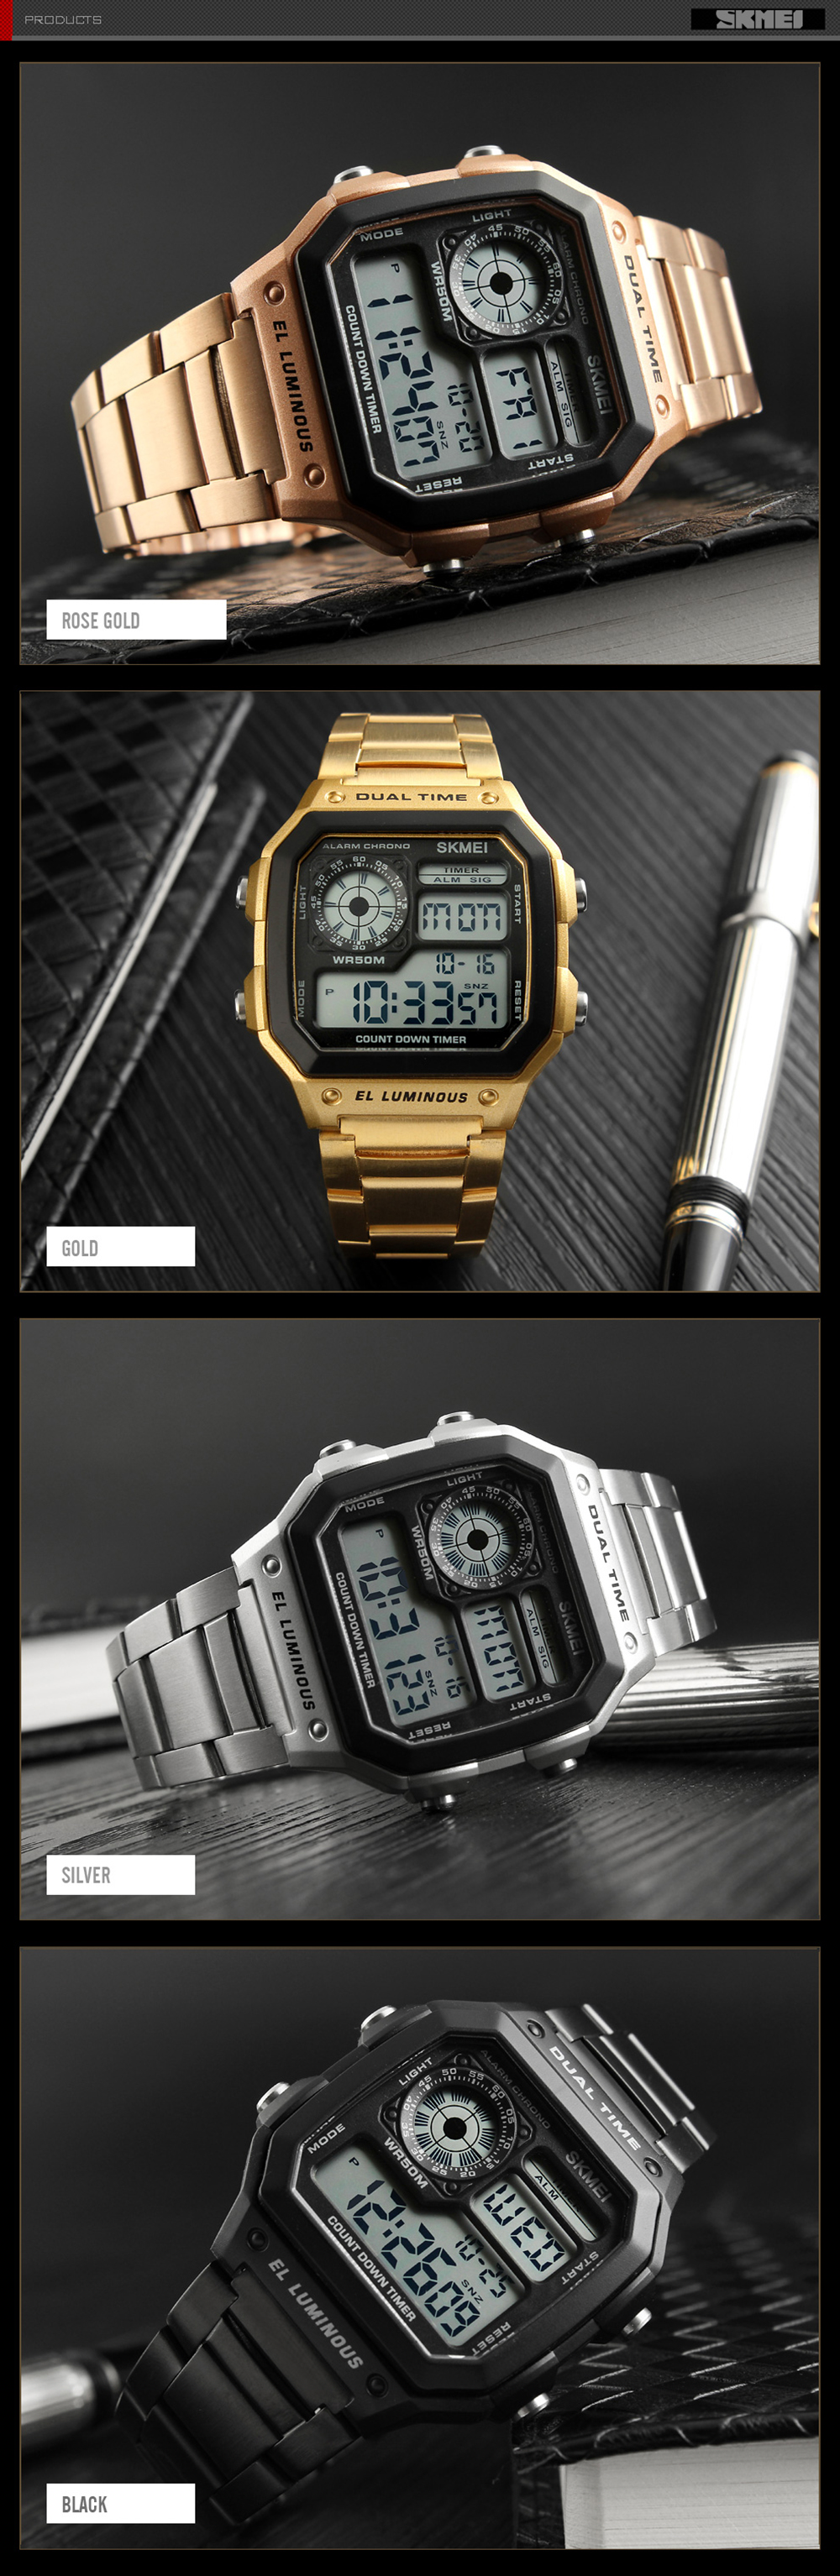 SKMEI Men Sports Waterproof Watch Stainless Steel Fashion Digital Wristwatches